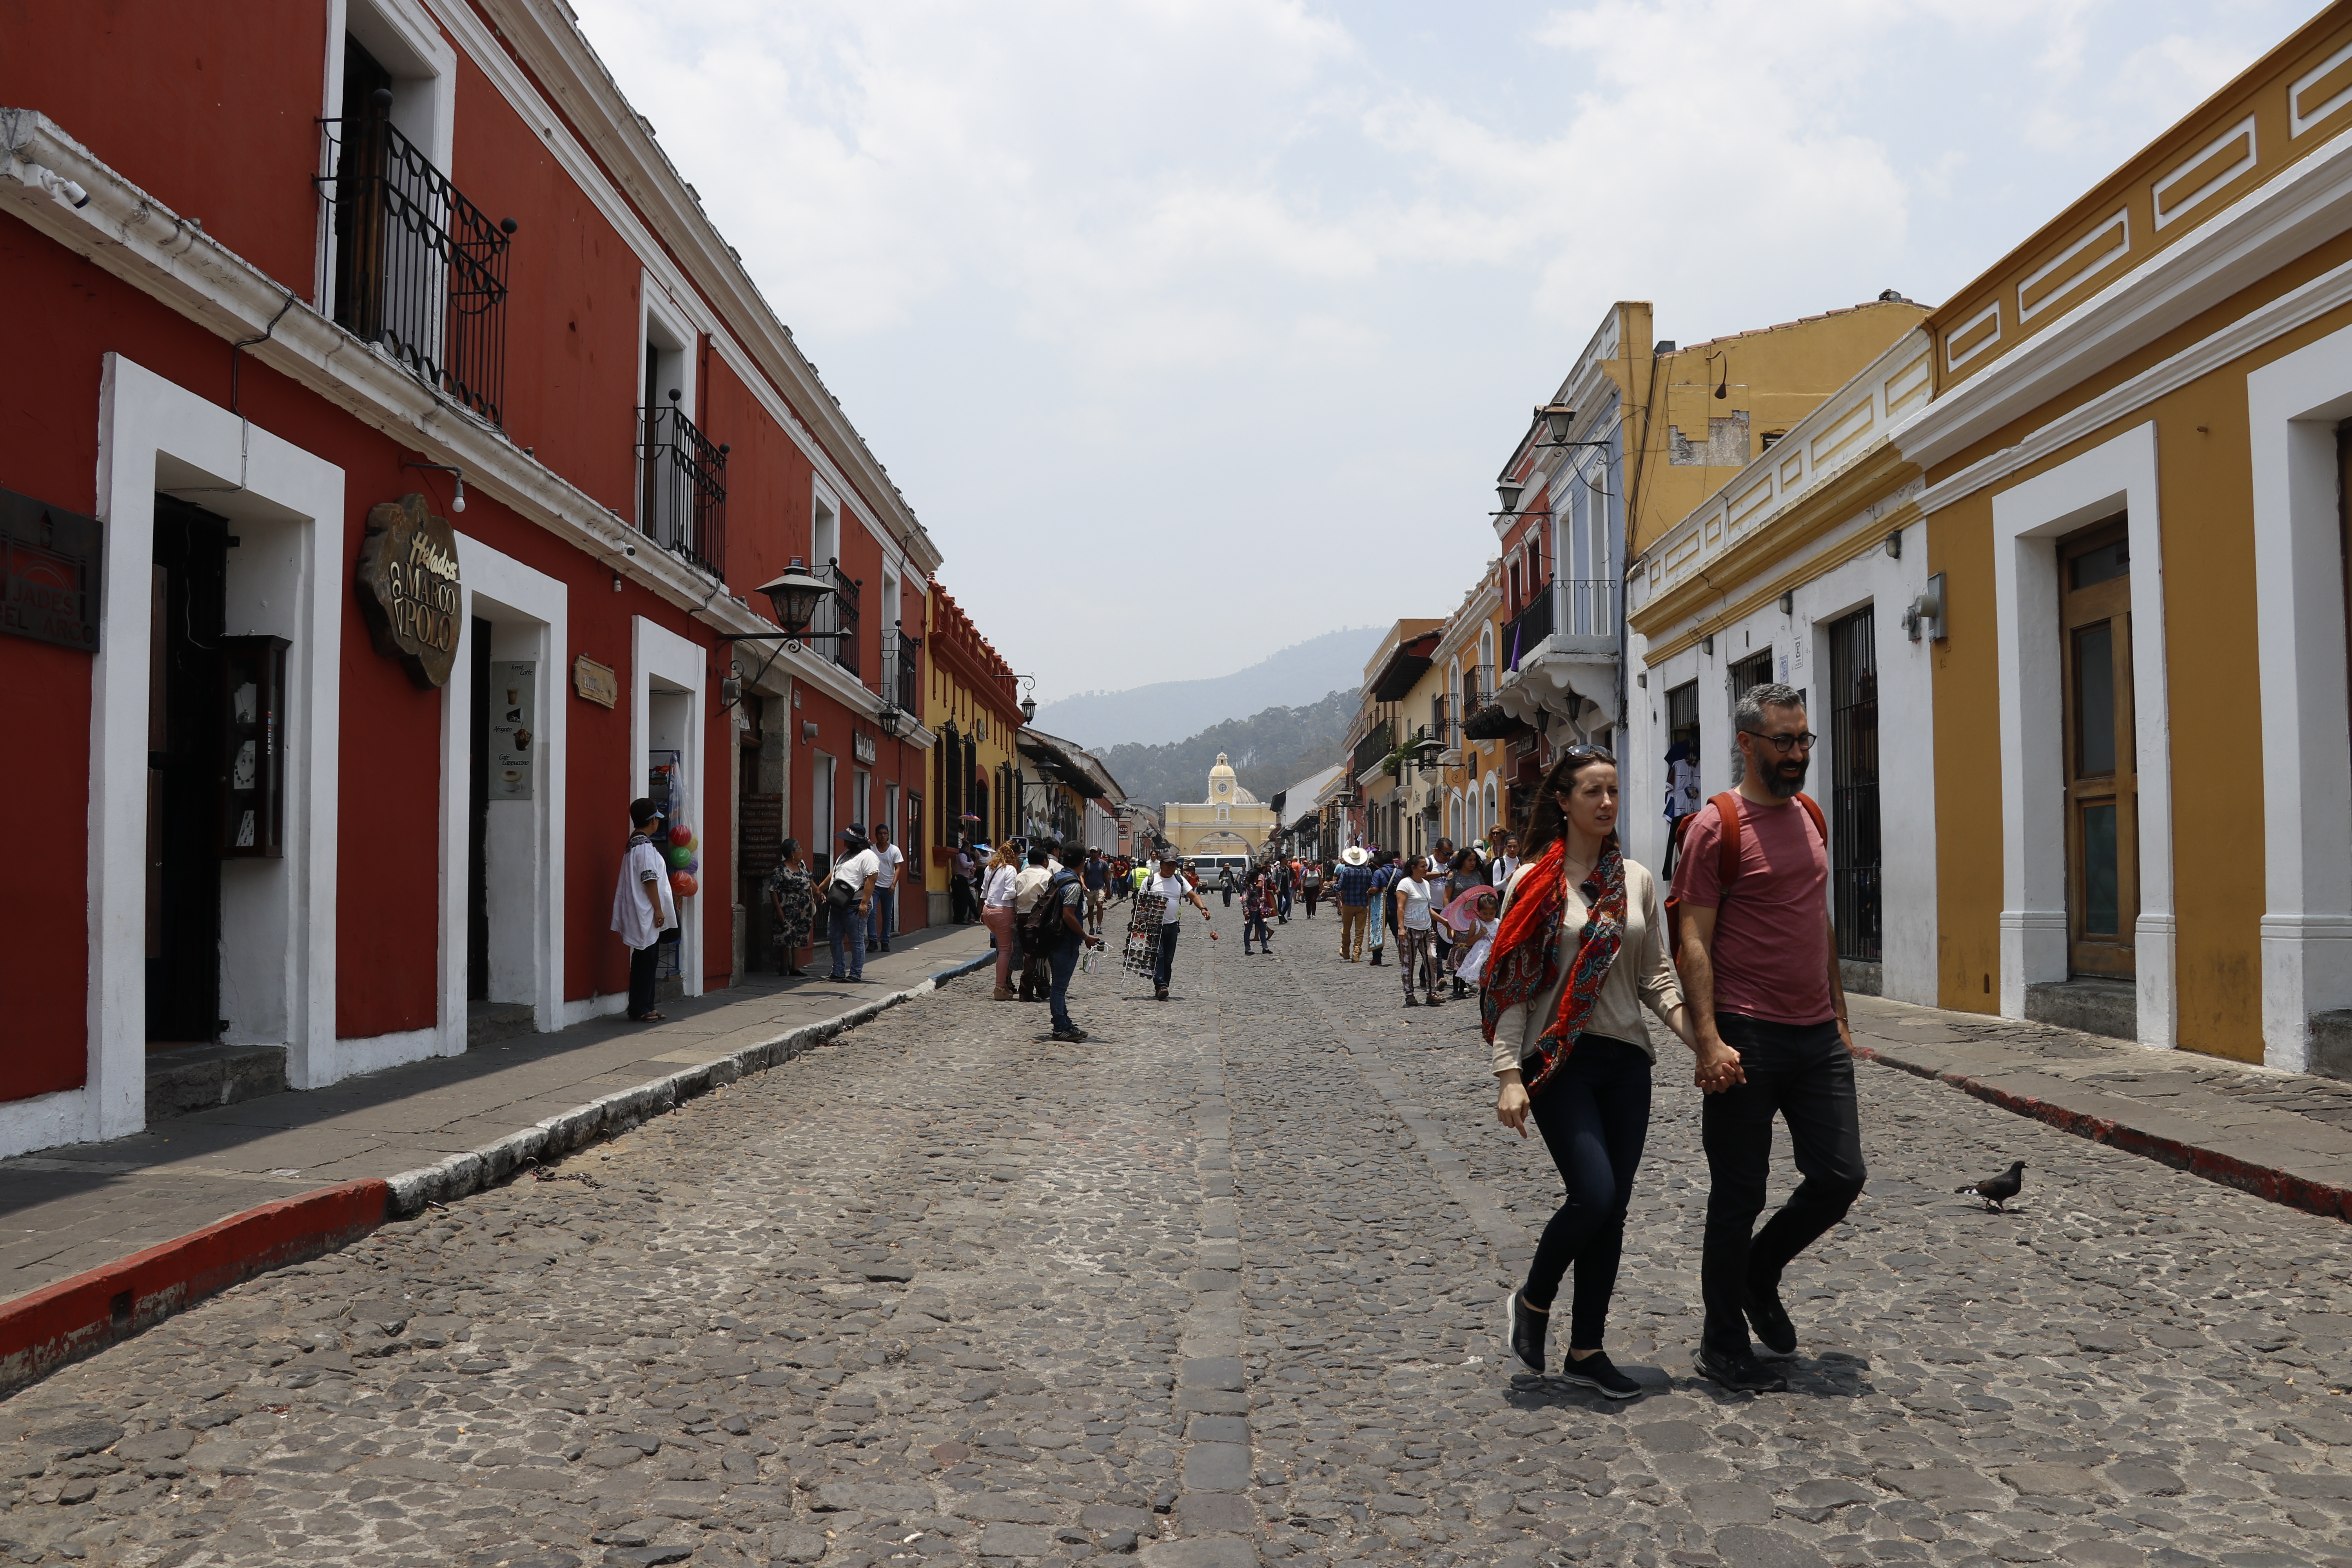 Con el 10% de los ingresos por remesas anual que se ahorren, pueden financiar proyectos en servicios turísticos en Antigua Guatemala, recomienda estudio de Cepal y Asíes. (Foto Prensa Libre: Hemeroteca)